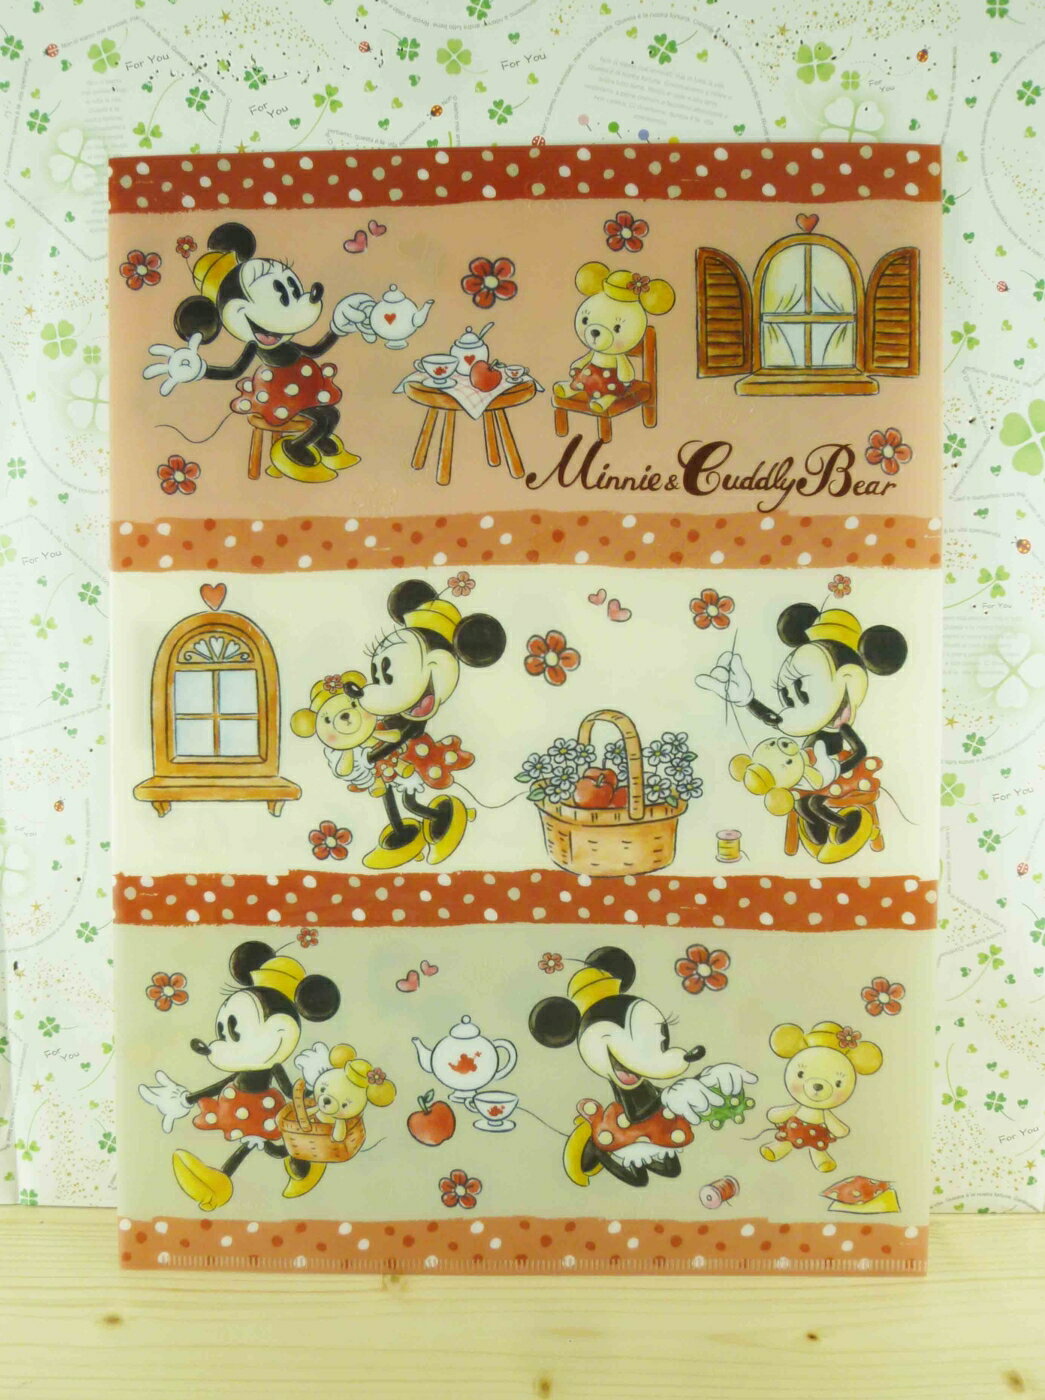 【震撼精品百貨】Micky Mouse 米奇/米妮 分類掀開夾-米妮與小熊的生活 震撼日式精品百貨